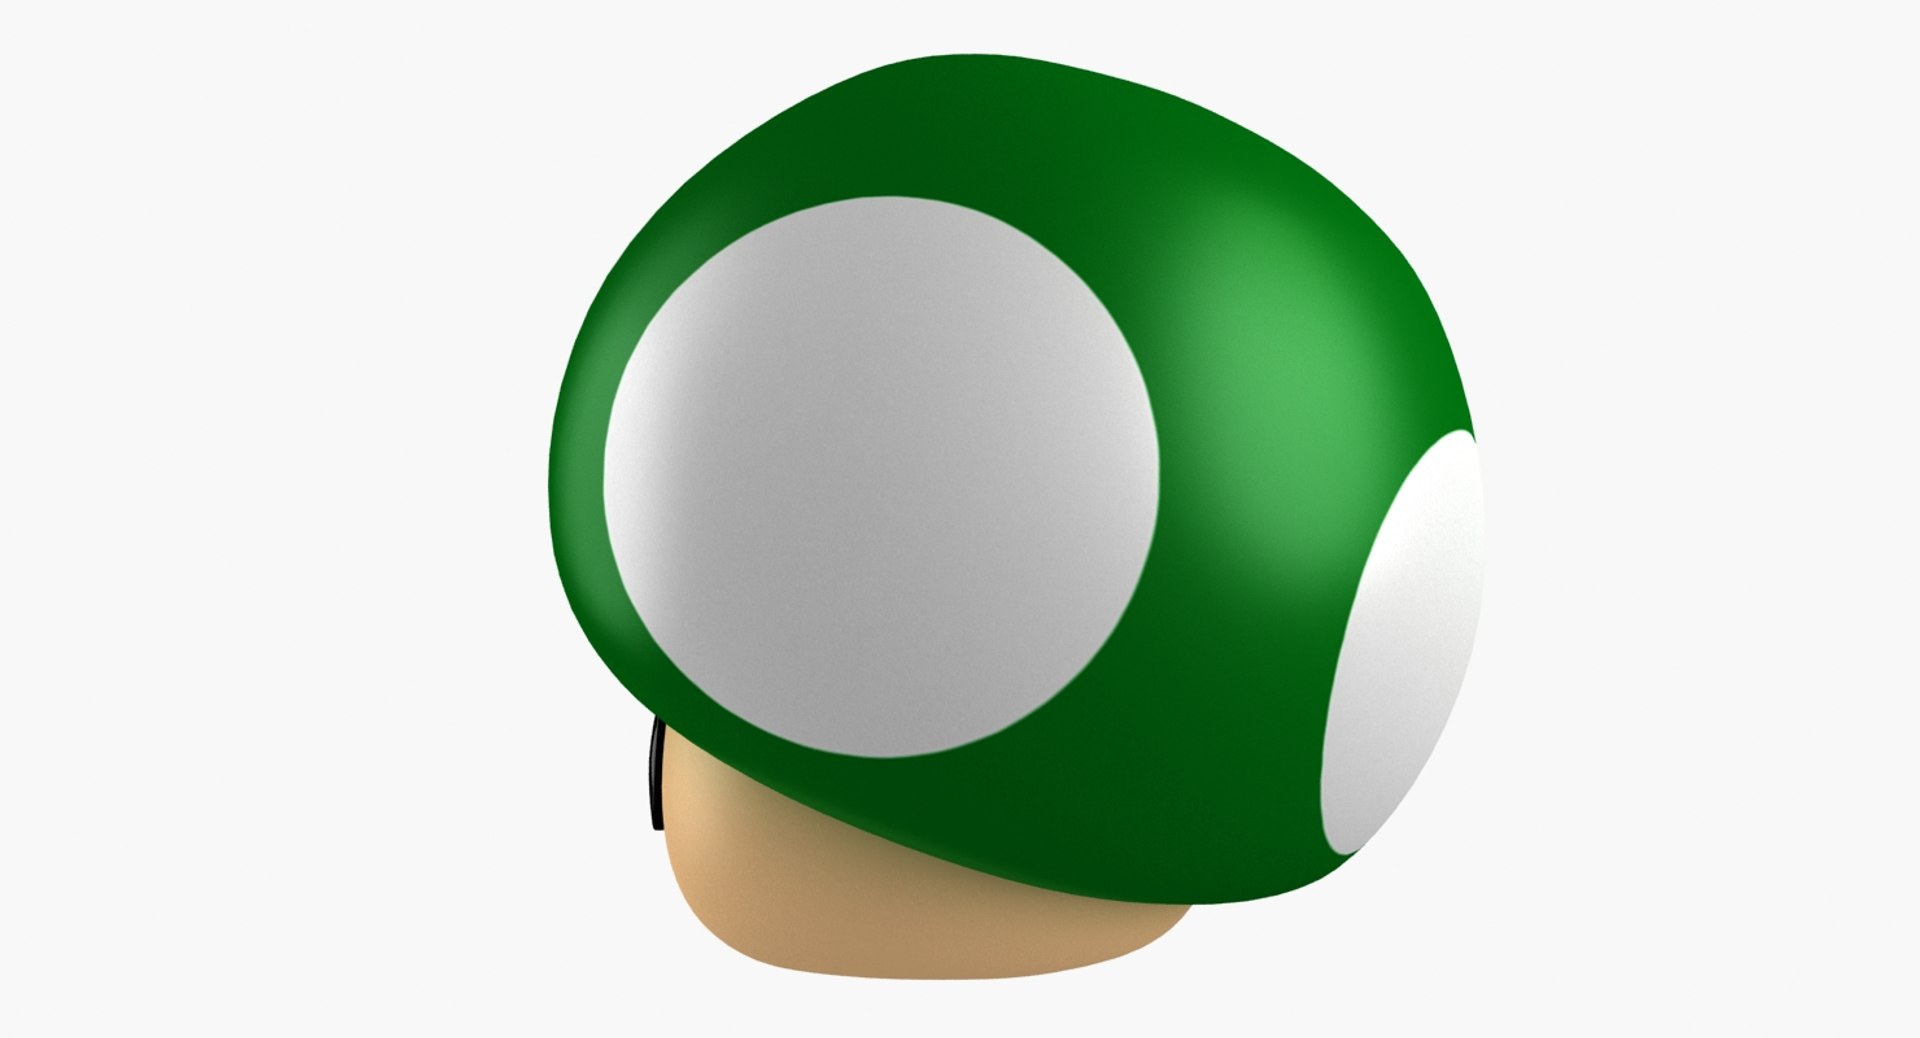 super mario green mushroom 3d model